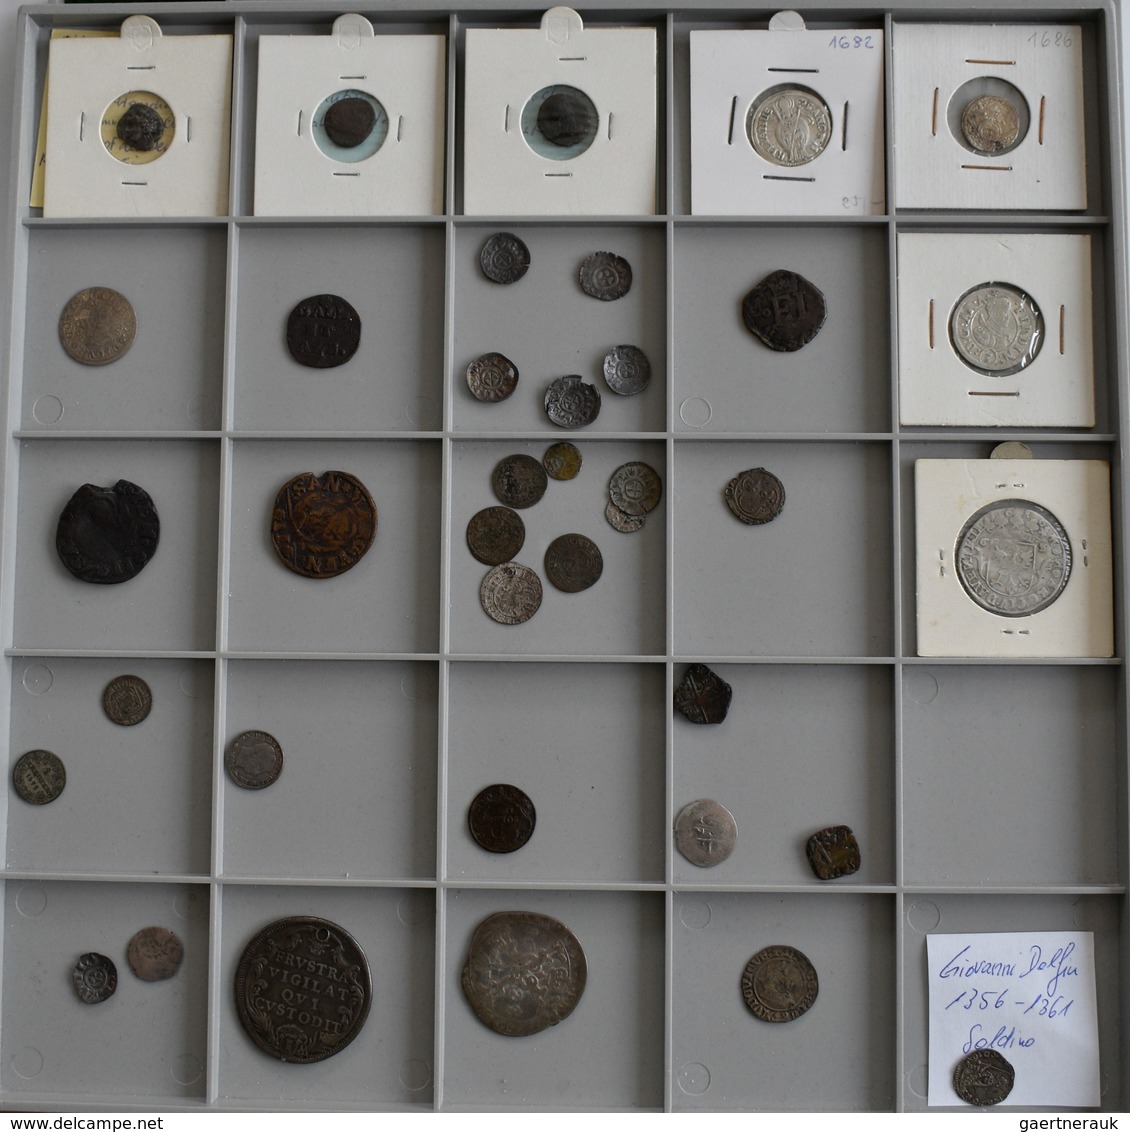 Europa: Konvolut Von Ca. 210 Silber- Und Bronzemünzen Diverser Europäischer Staaten, Beginnend Ab De - Andere - Europa